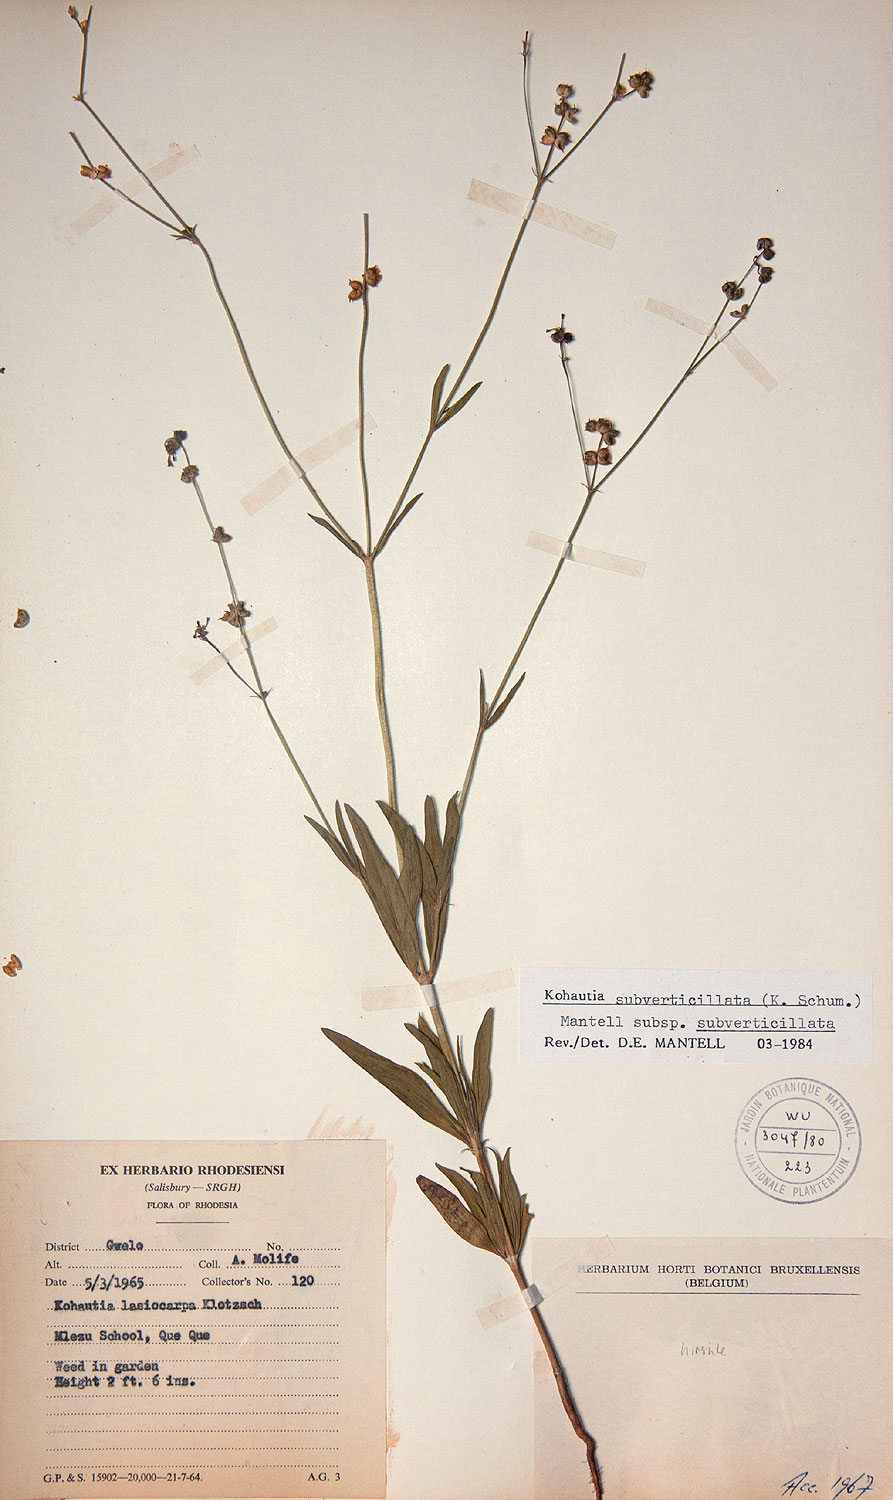 Kohautia subverticillata subsp. subverticillata